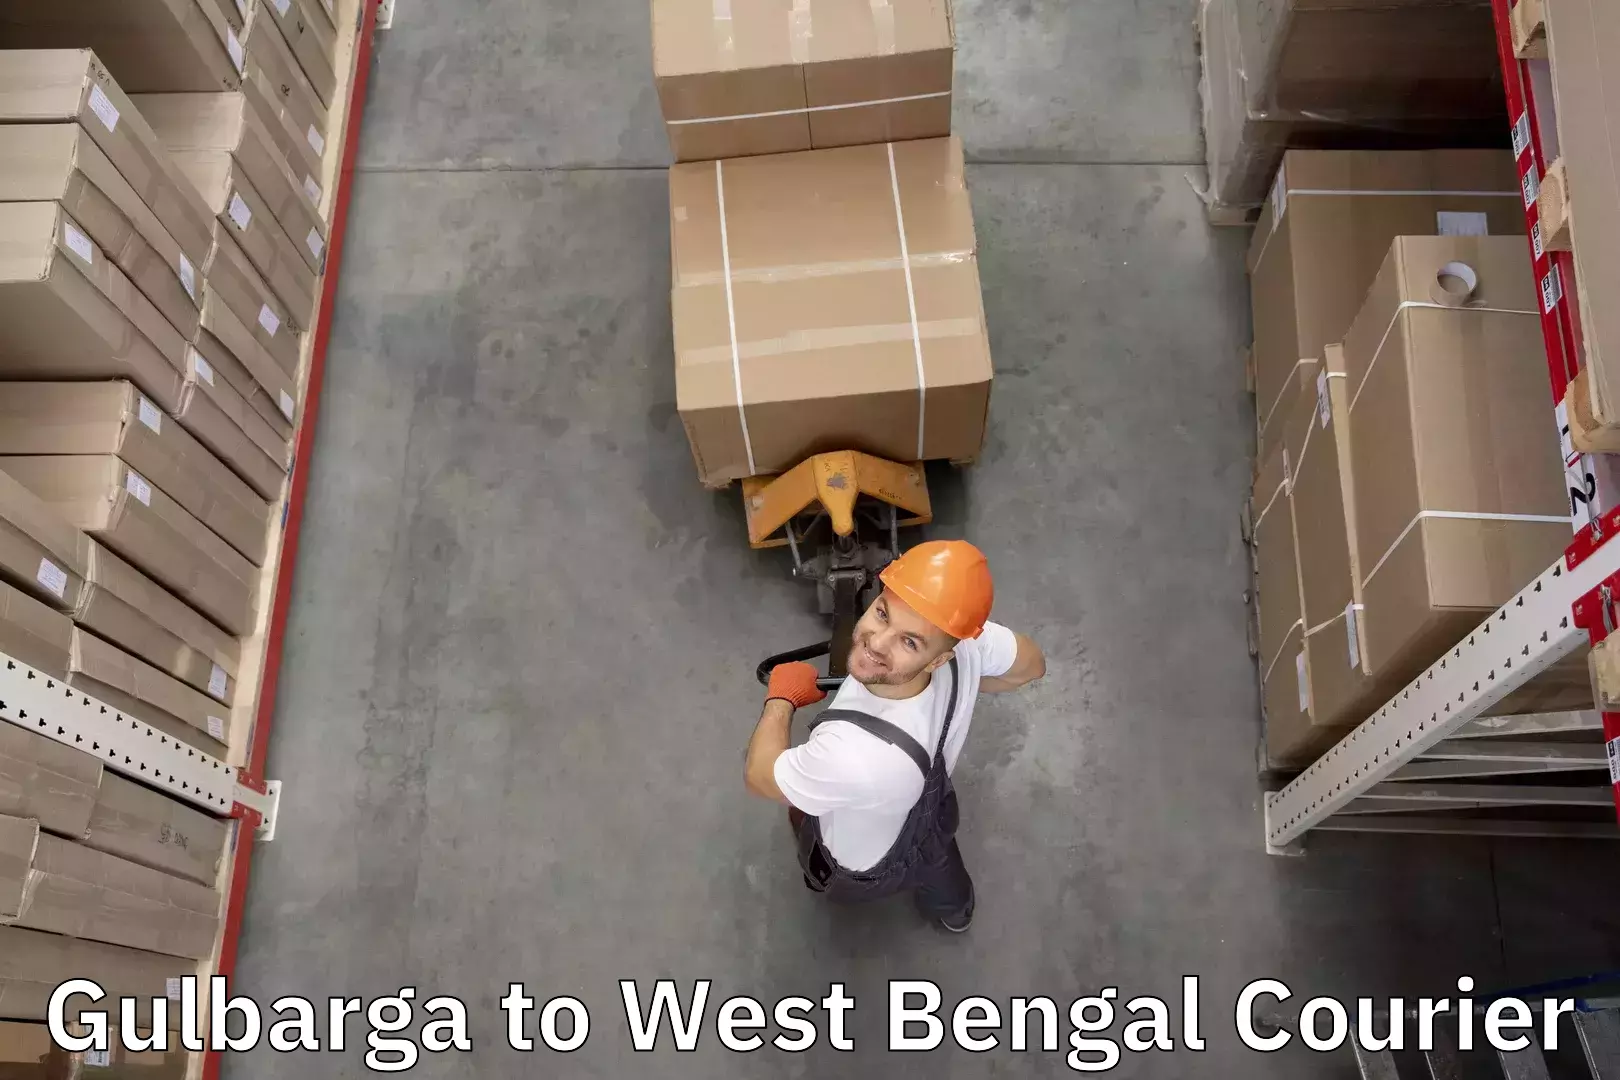 Baggage transport technology Gulbarga to Raghunathganj